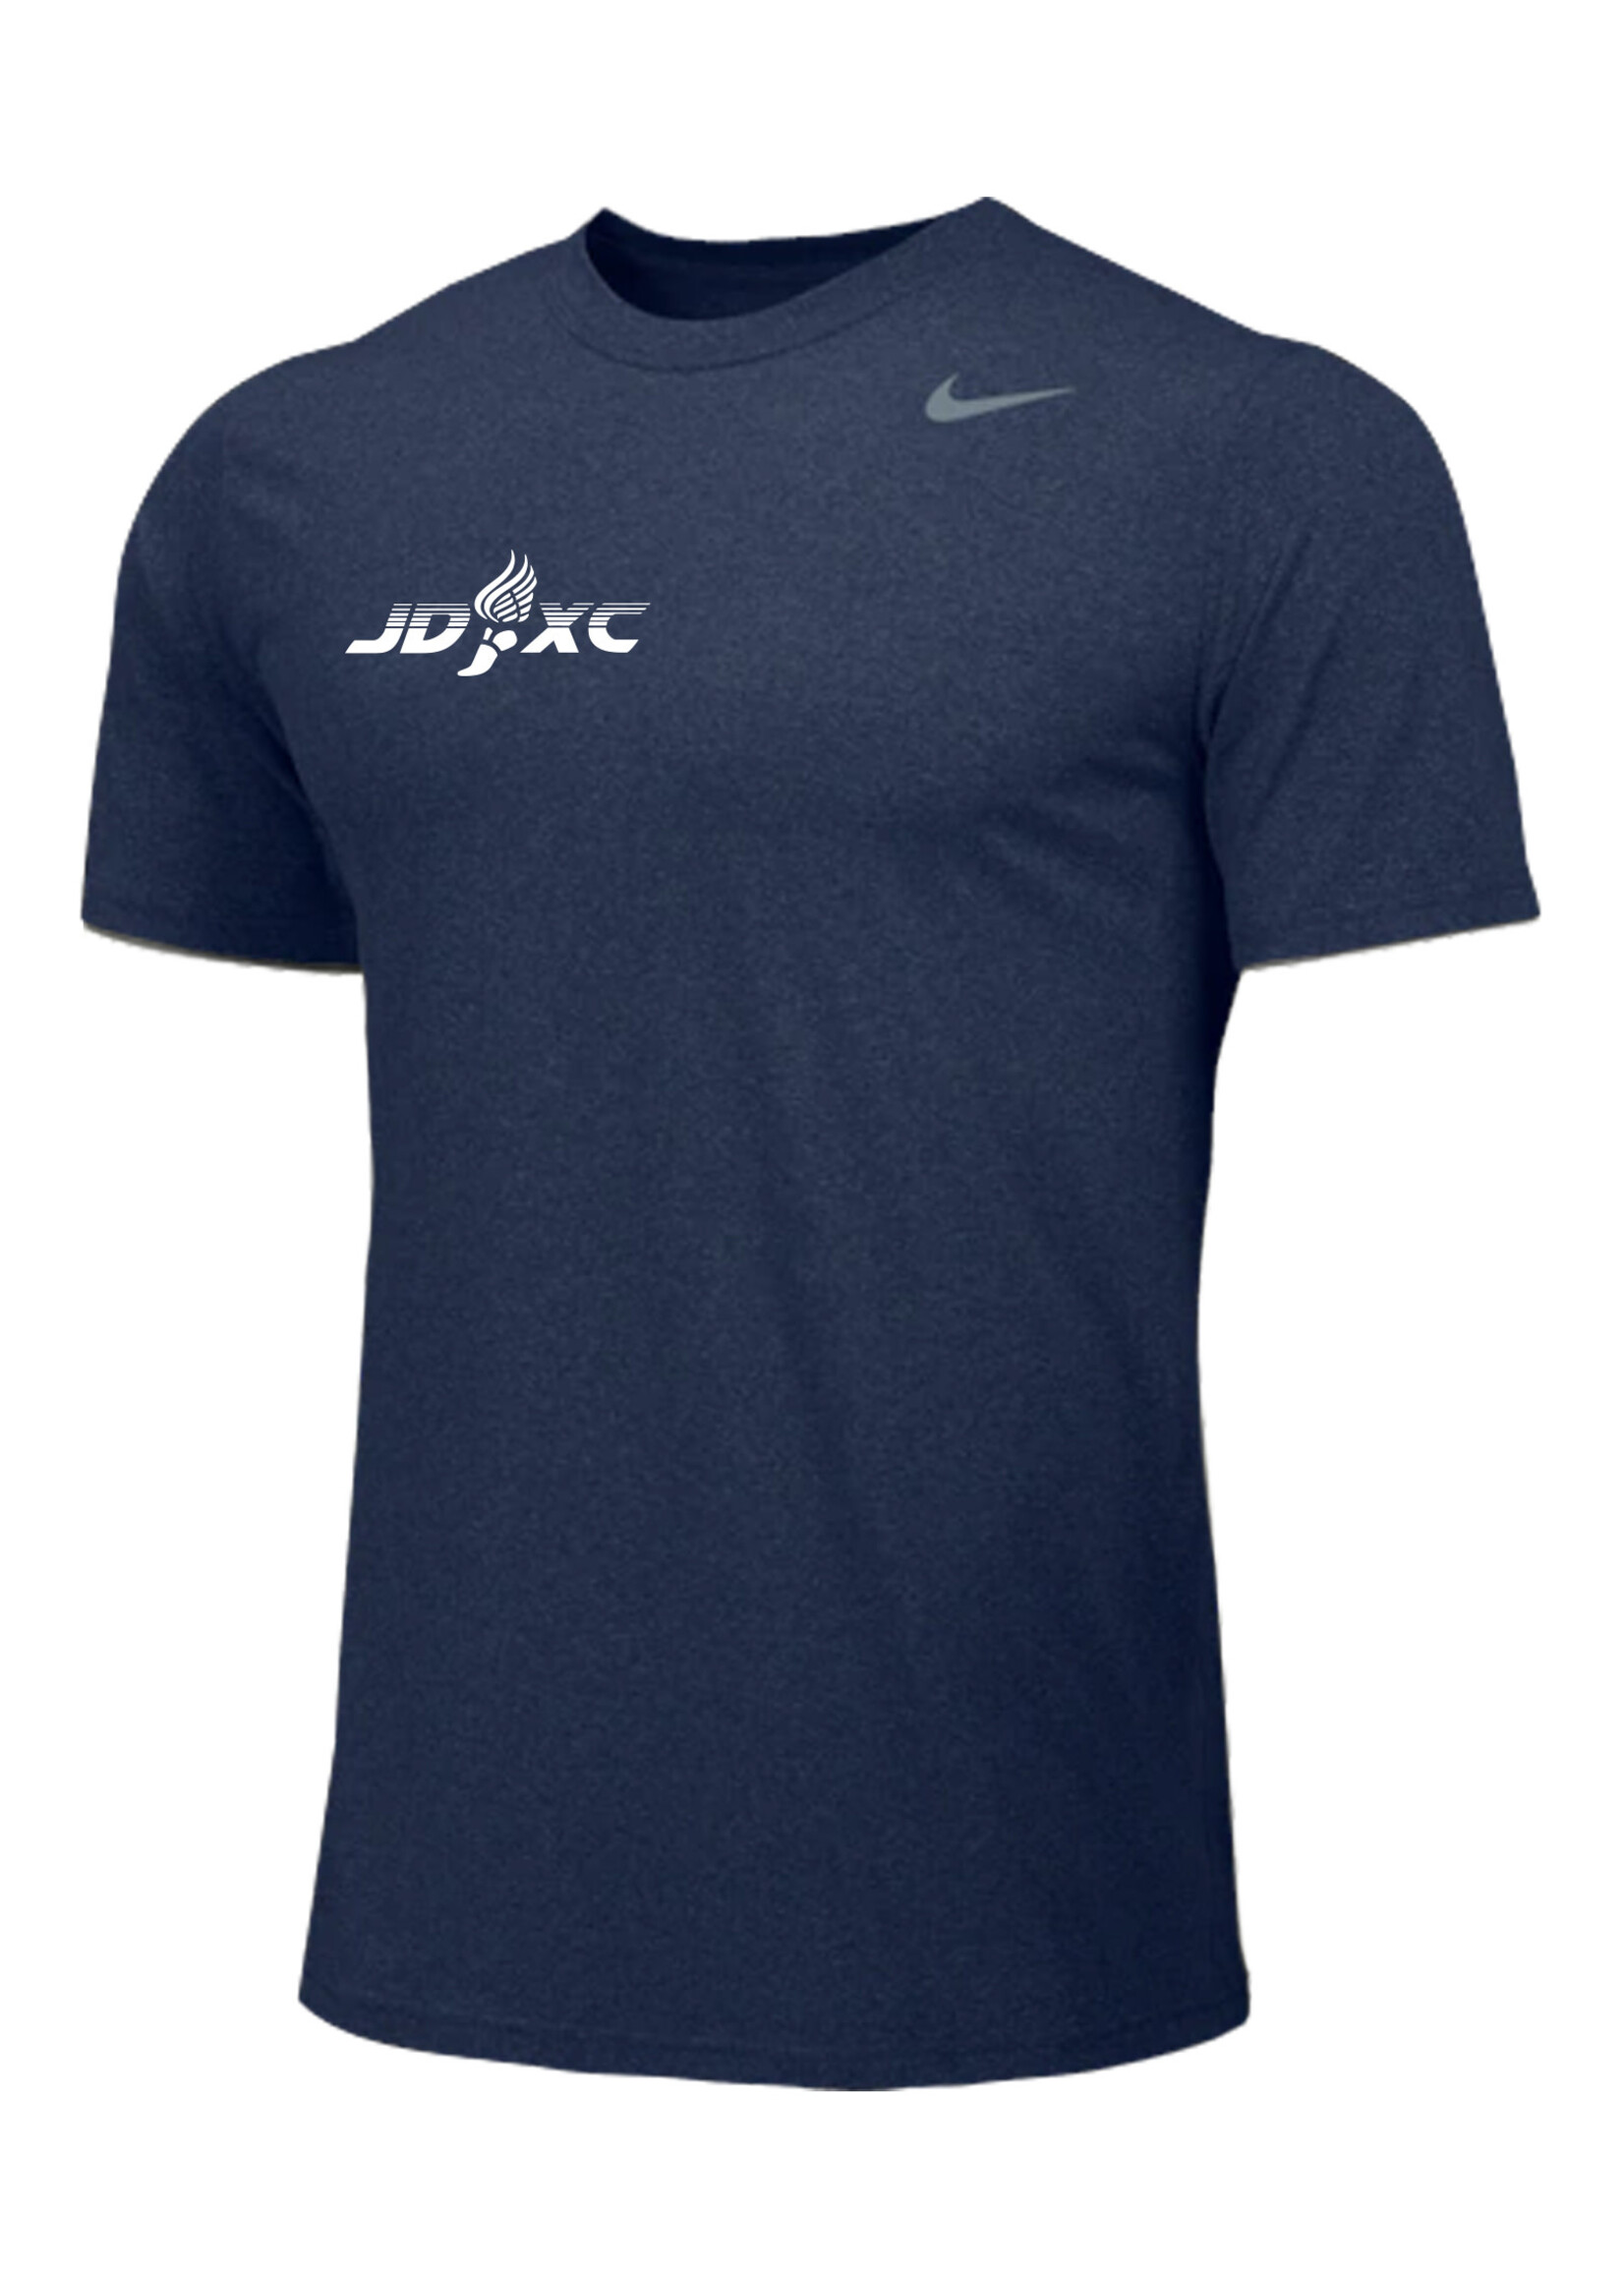 NON-UNIFORM JD Cross Country Nike Legend Short Sleeve Shirt, Men's & Women's